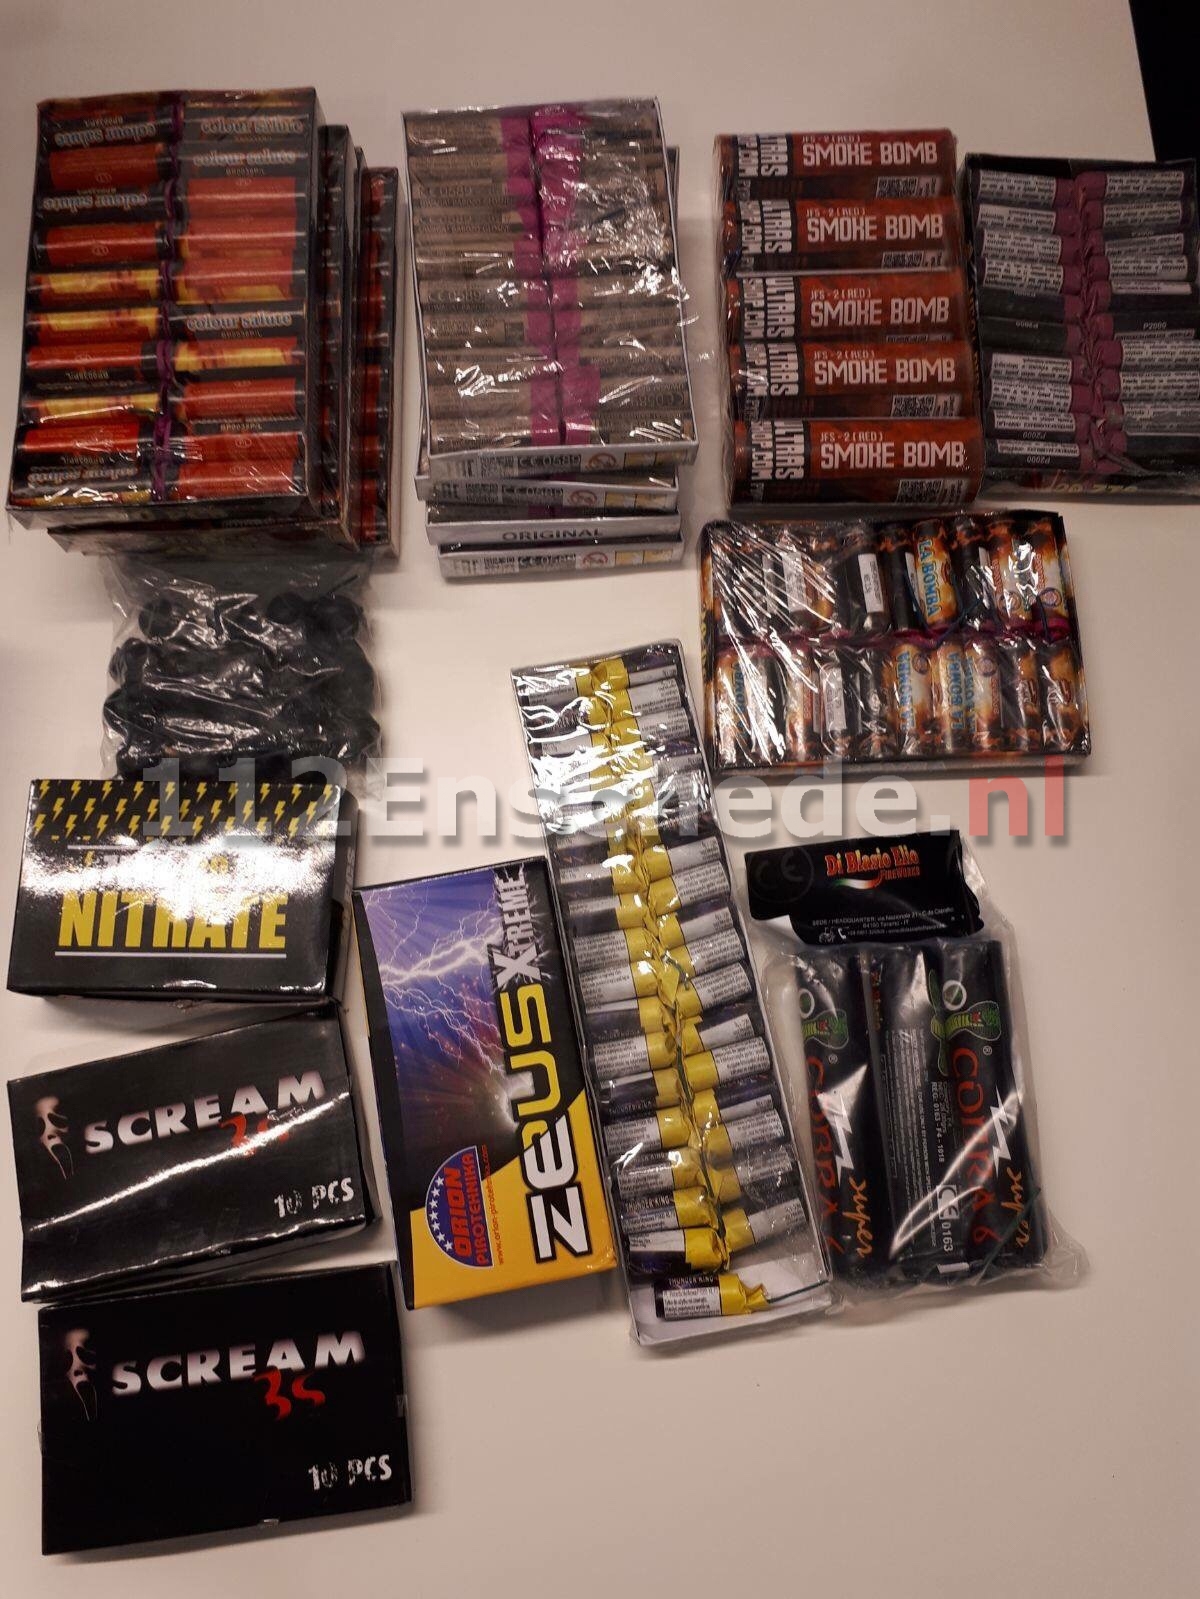 64 kilo zwaar illegaal vuurwerk aangetroffen in Enschede, 12 adressen bezocht